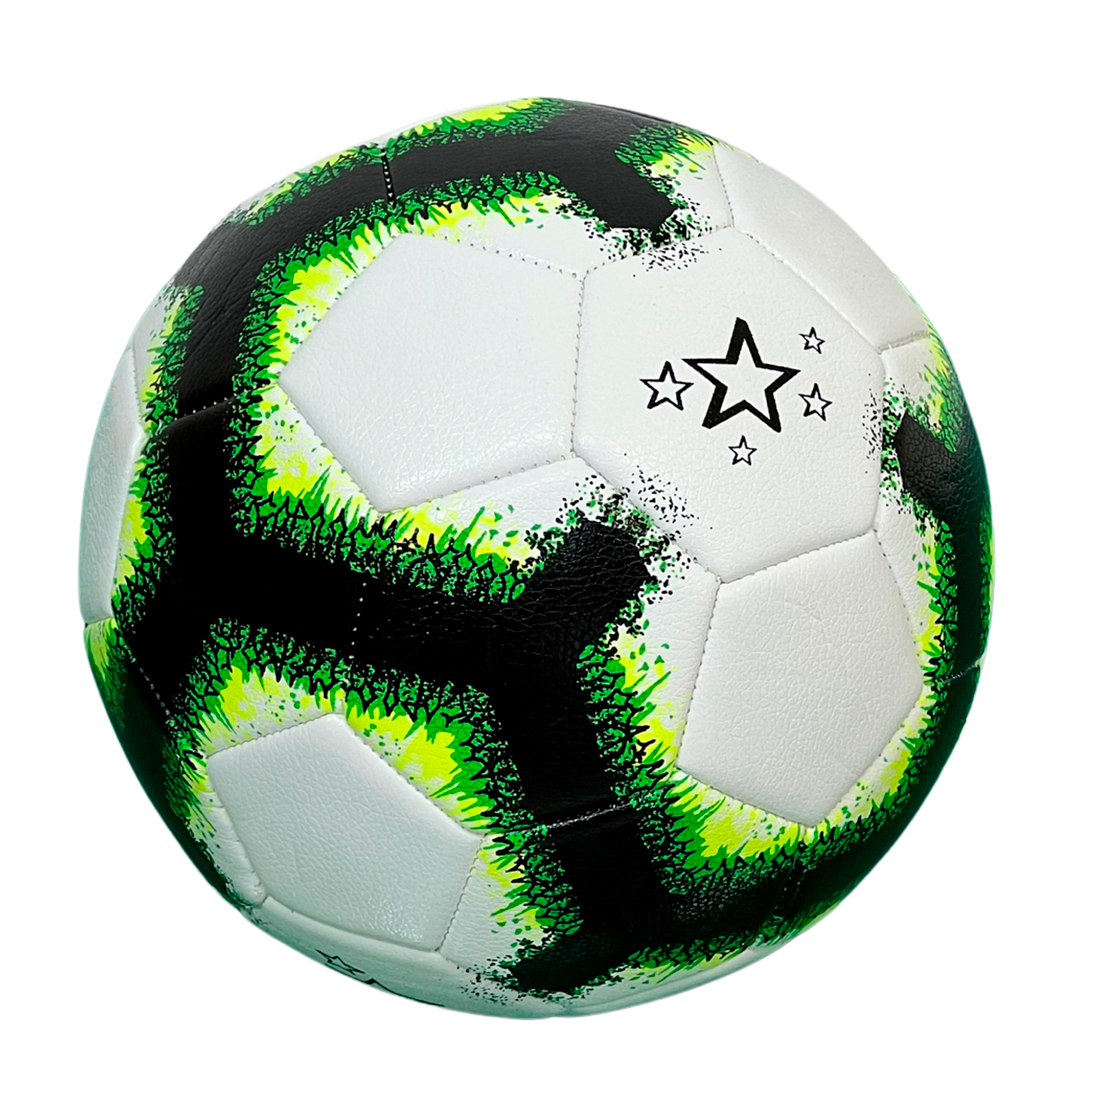 М'яч футбольний Europaw AFB 4